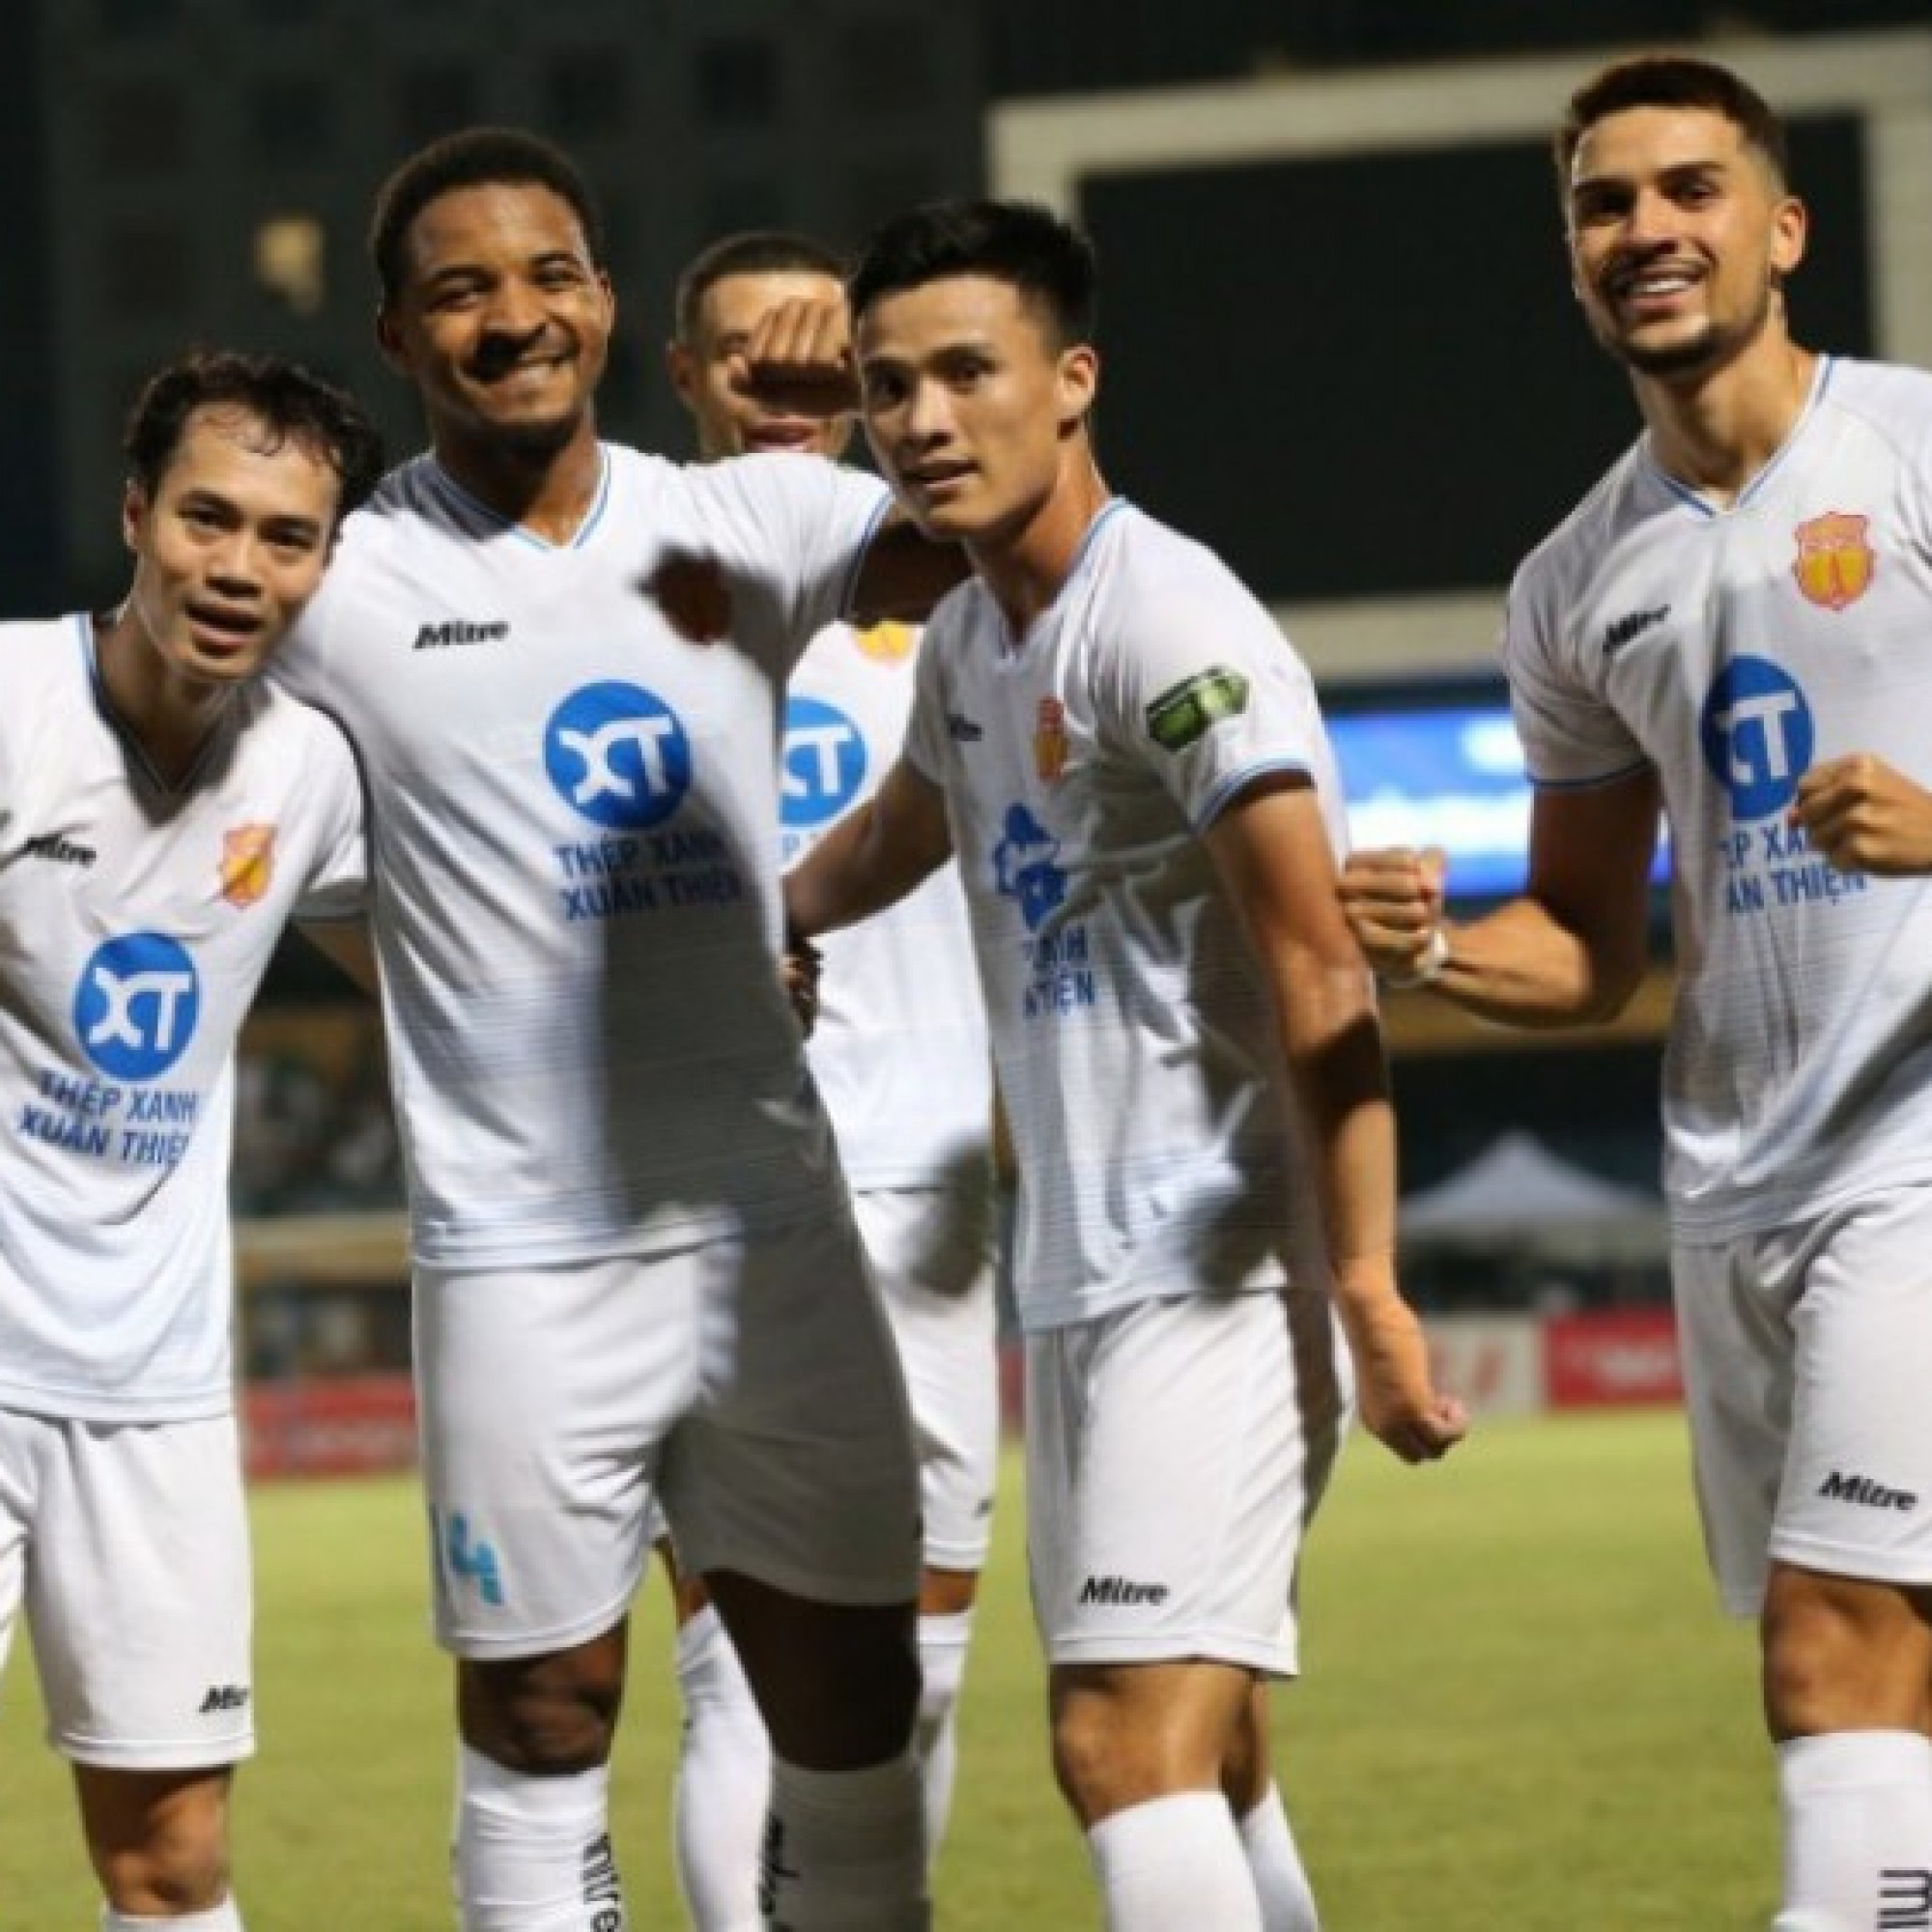  - Trực tiếp bóng đá Thể Công Viettel - Nam Định: Nguyên Mạnh cứu thua (V-League)